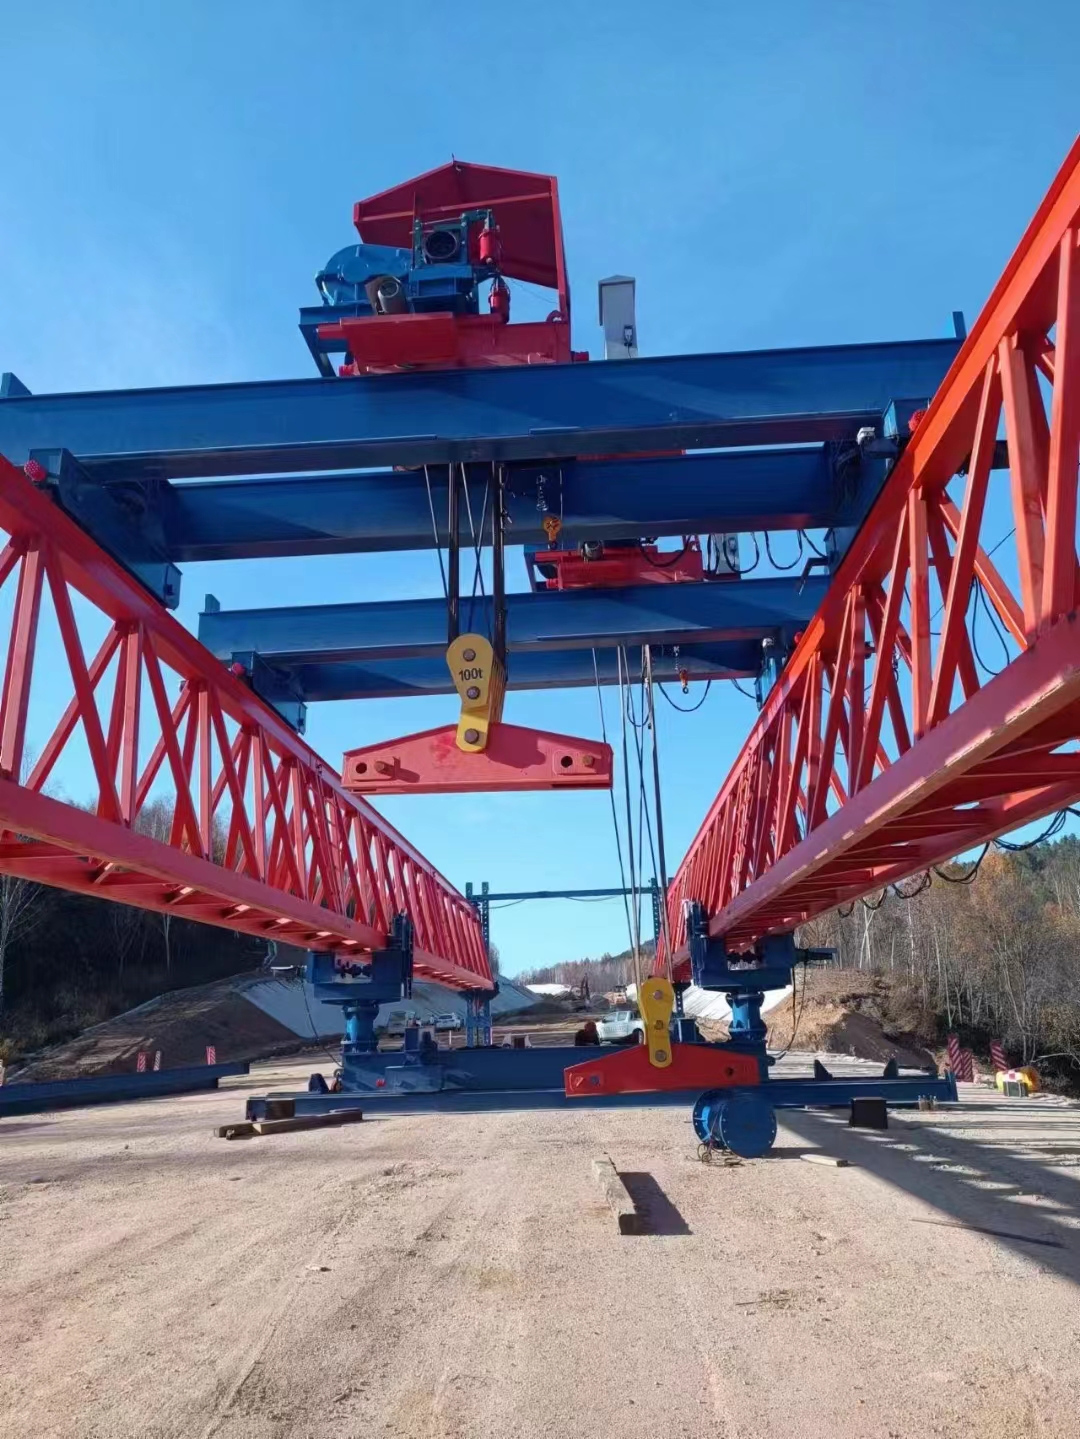 黑龙江交投集团购买的第二台QJ40/200吨自平衡架桥机安装完成。服务黑龙江(鹤岗-伊春)高速1标2工区